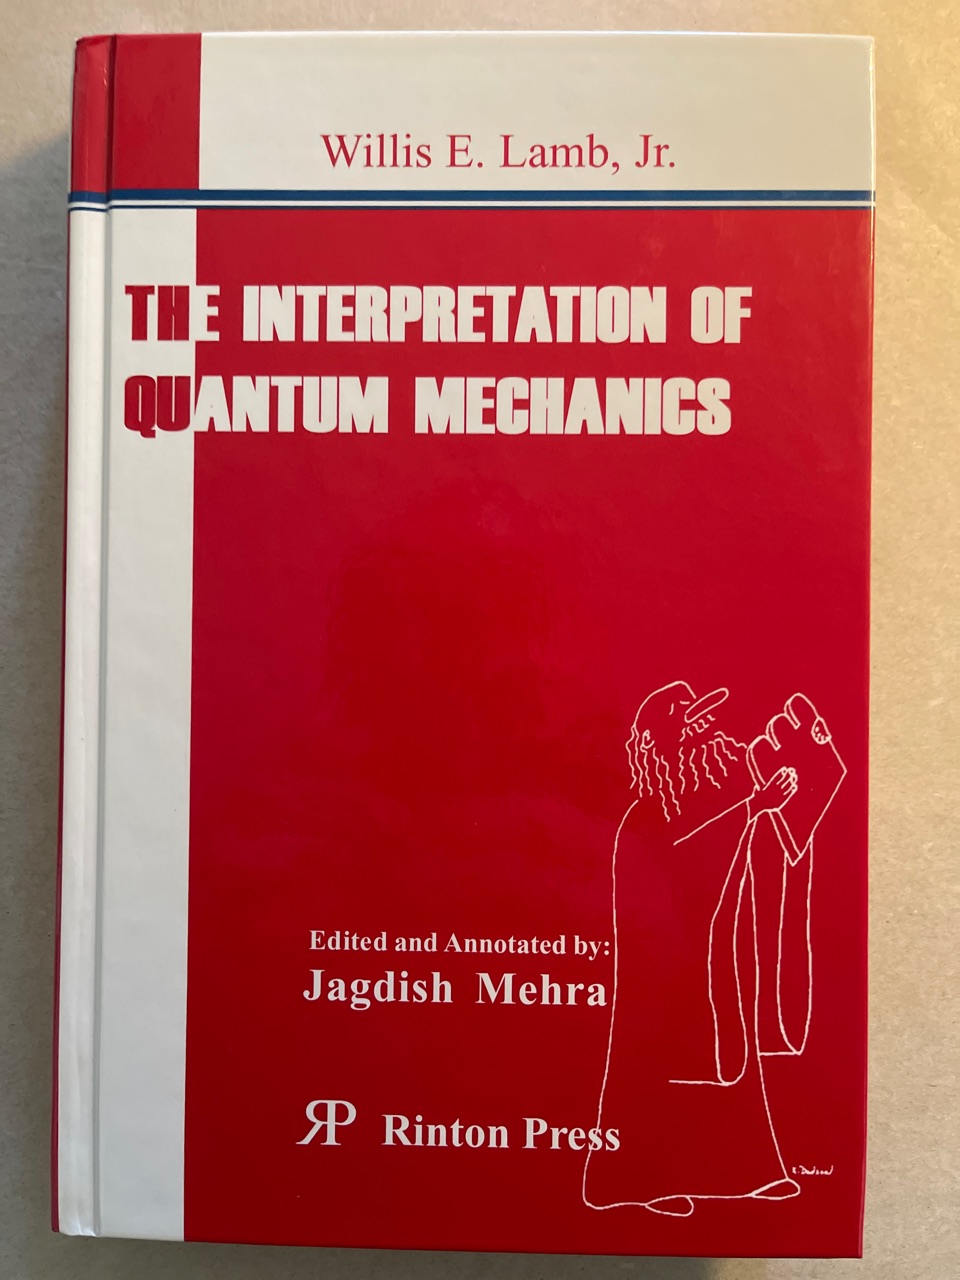 The Interpretation of Quantum Mechanics. - Mehra, Jagdish and Willis E. Lamb